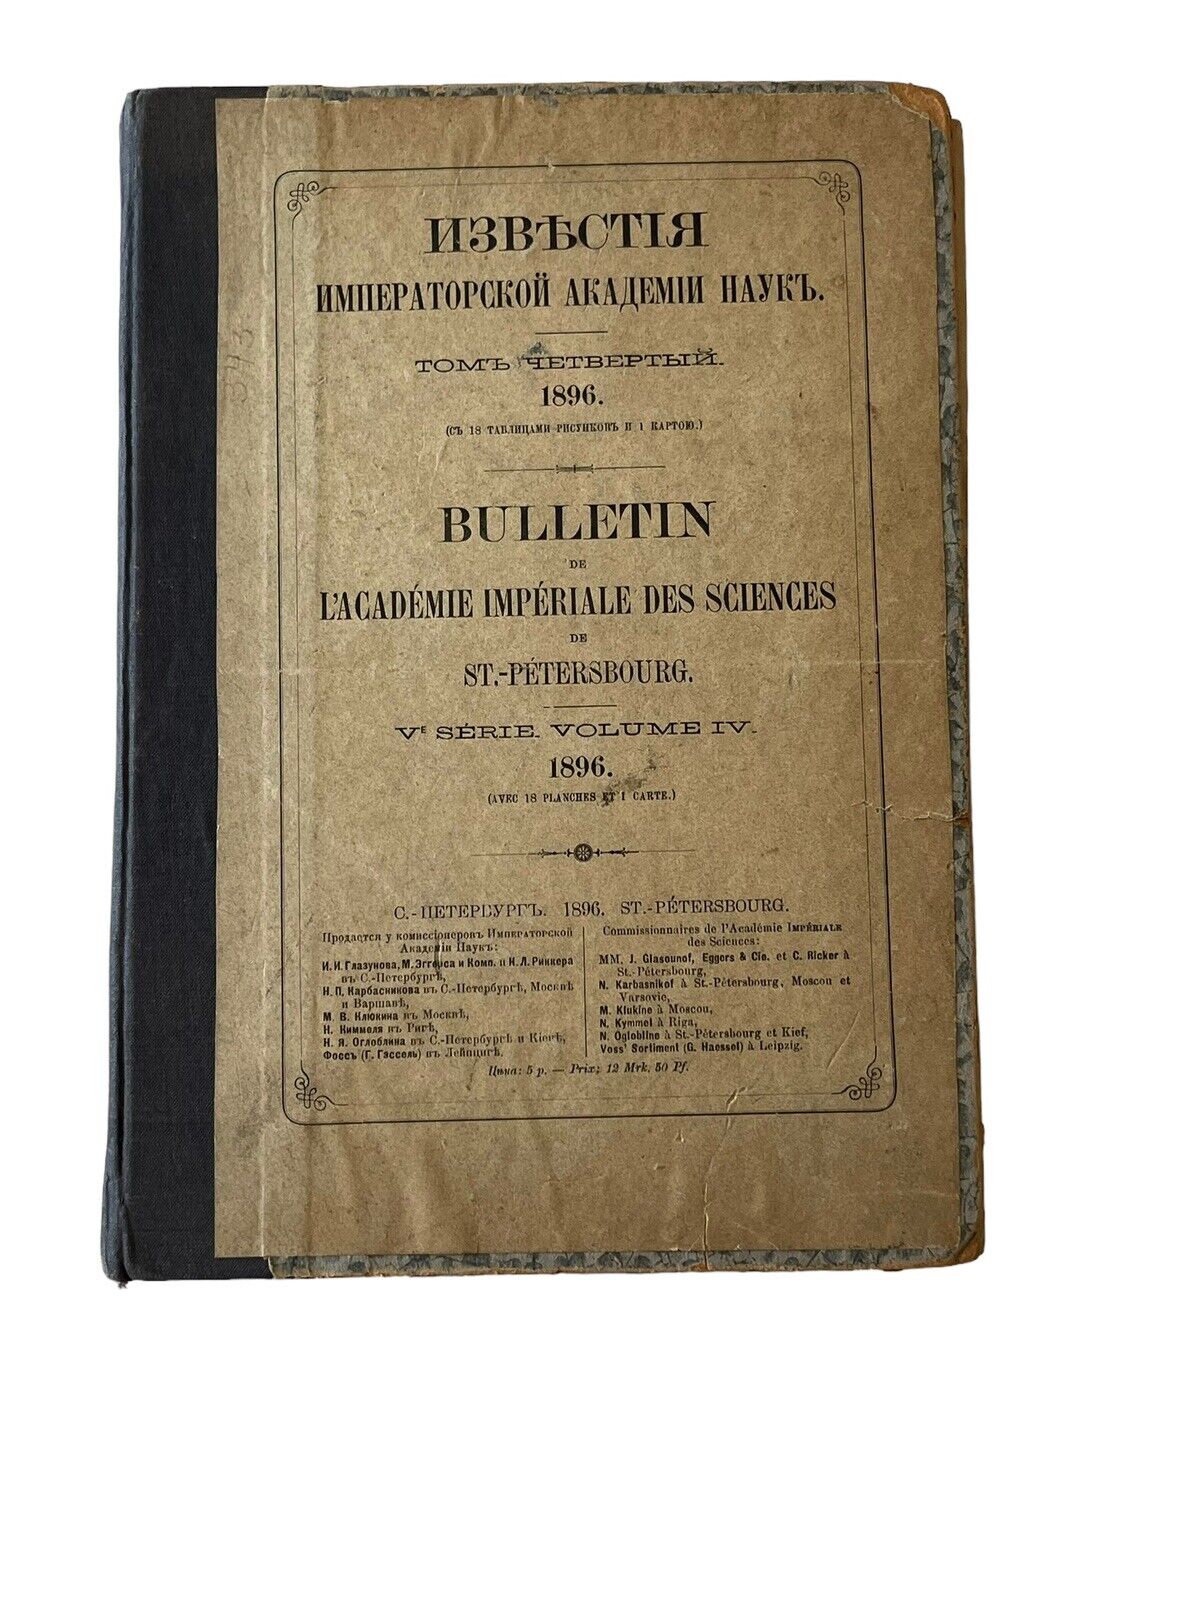 Rare 1896 Antique Russian Science Journals-Biology Bulletin De St Pétersbourg